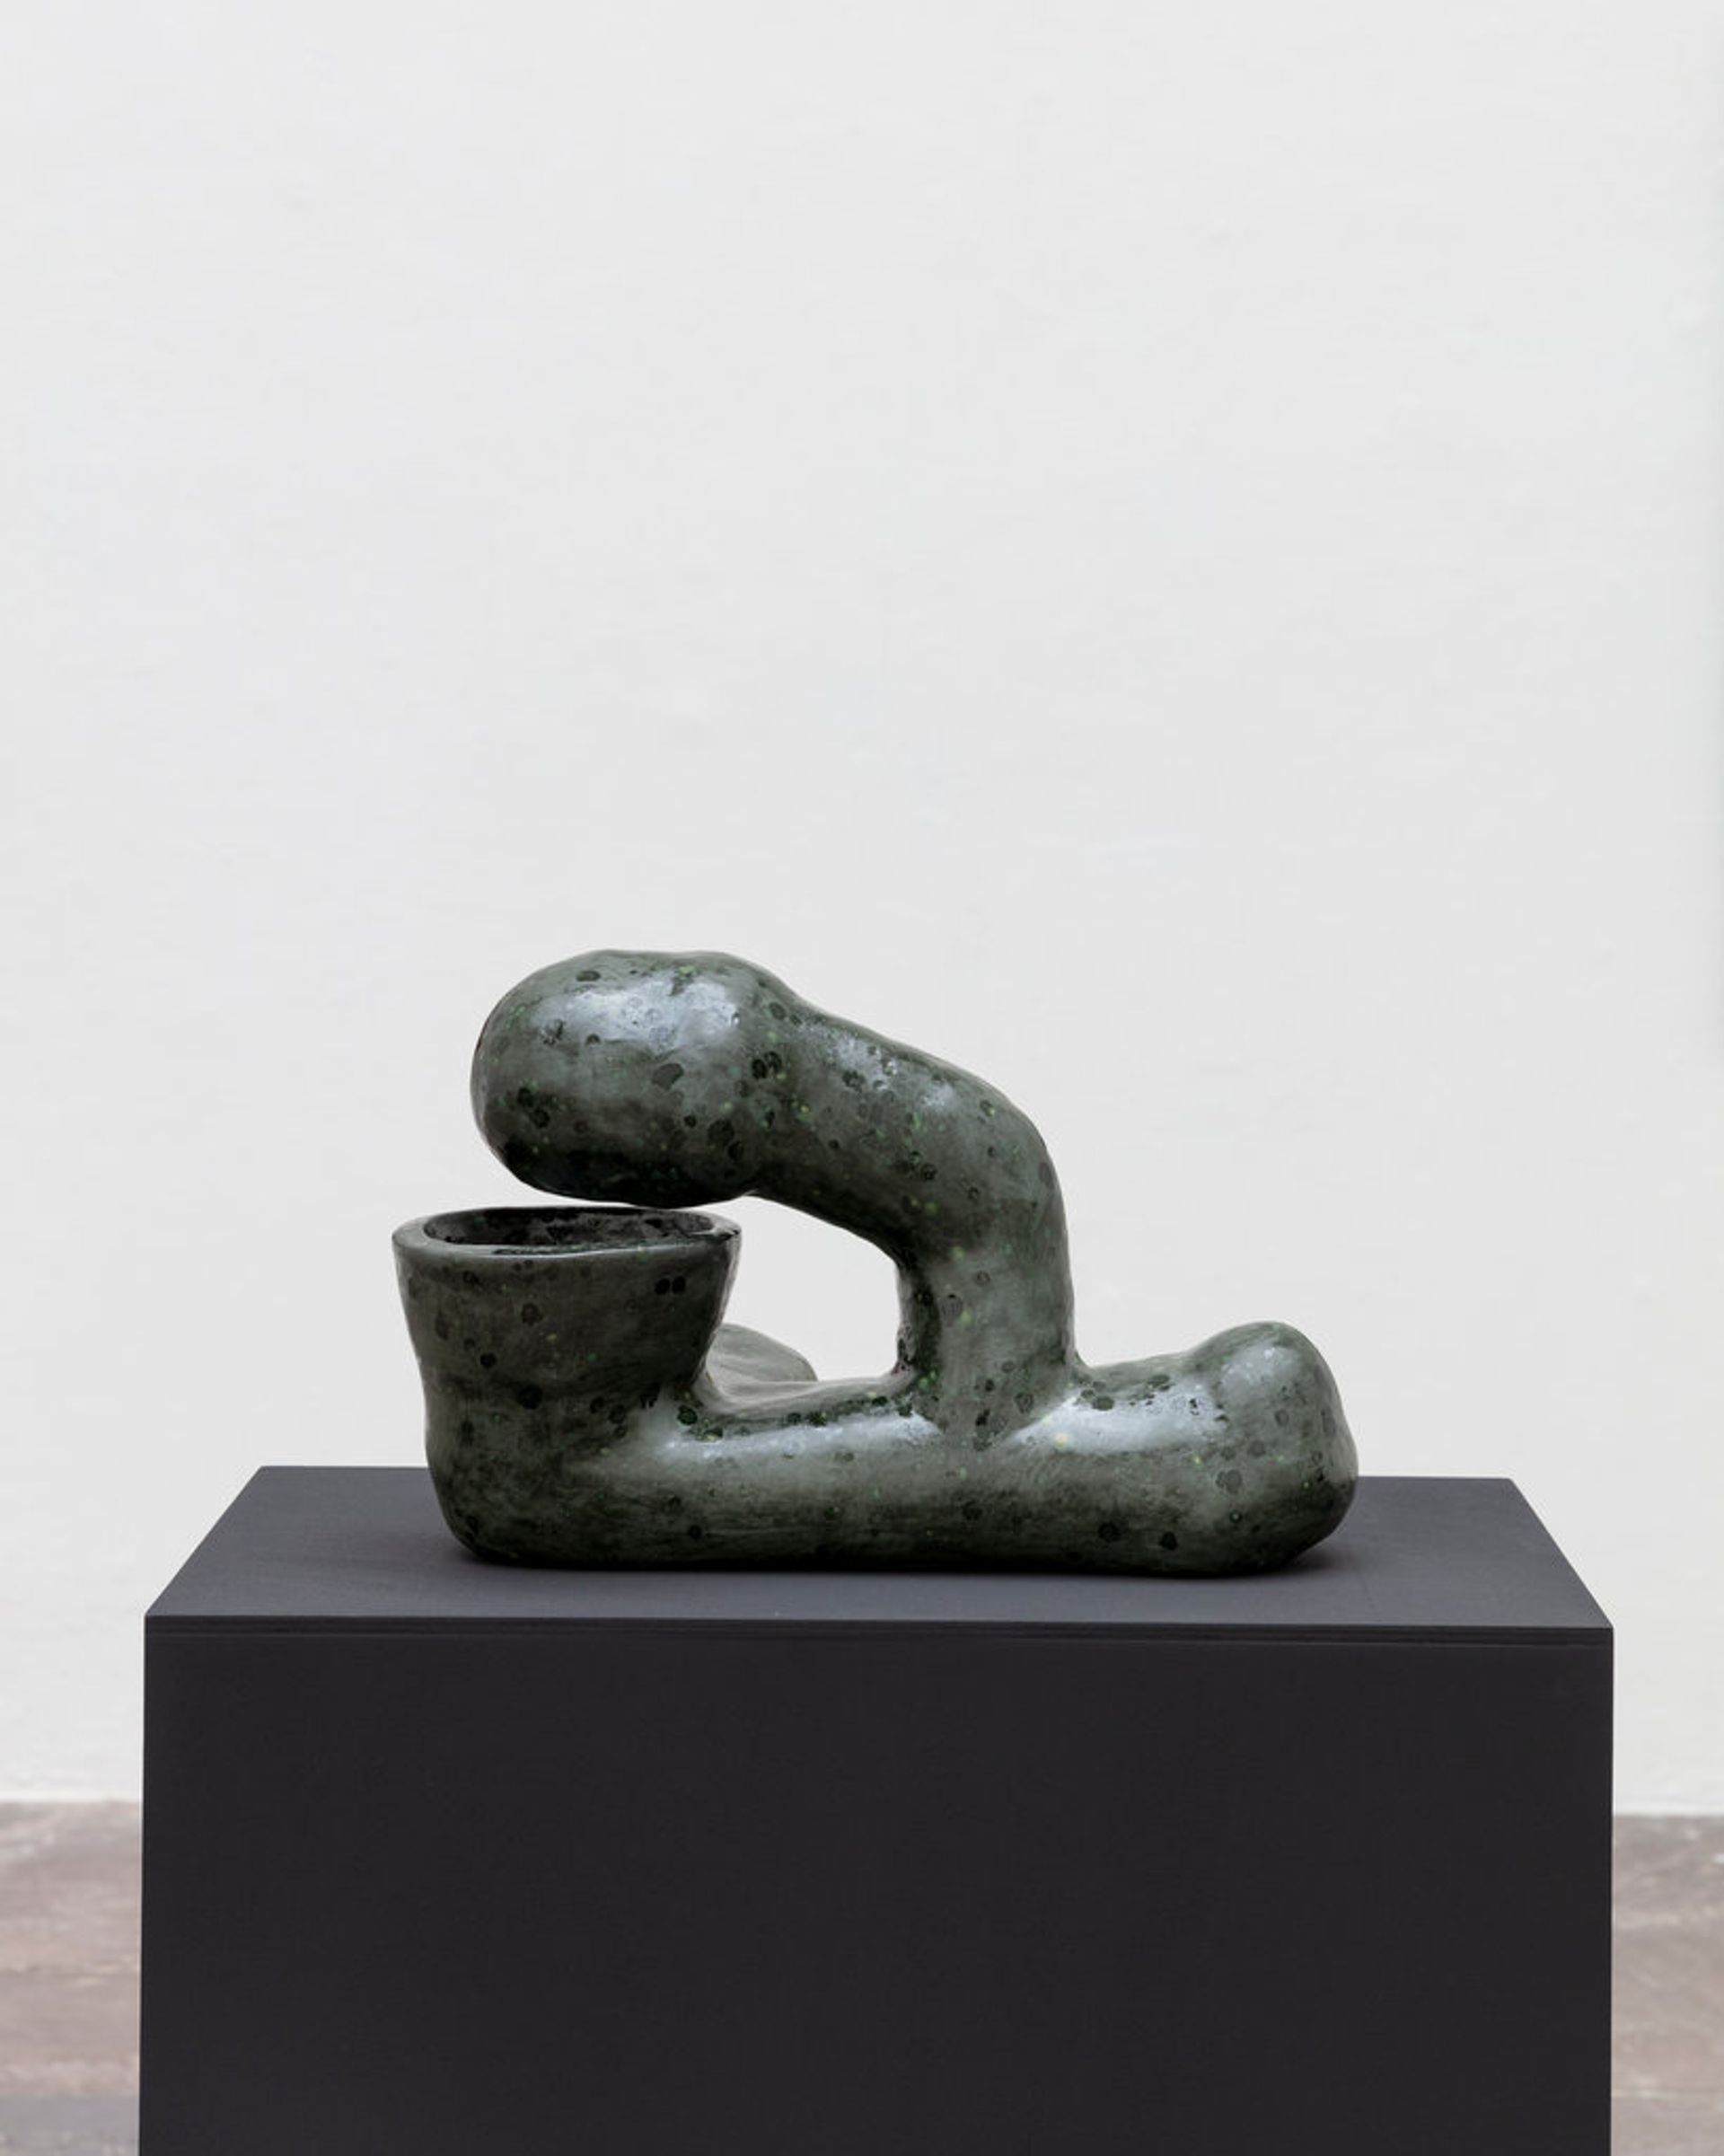 Veronika Hilger, Untitled, 2020, ceramic, glazed, epoxide resin, minerals, 26 × 42 × 23 cm